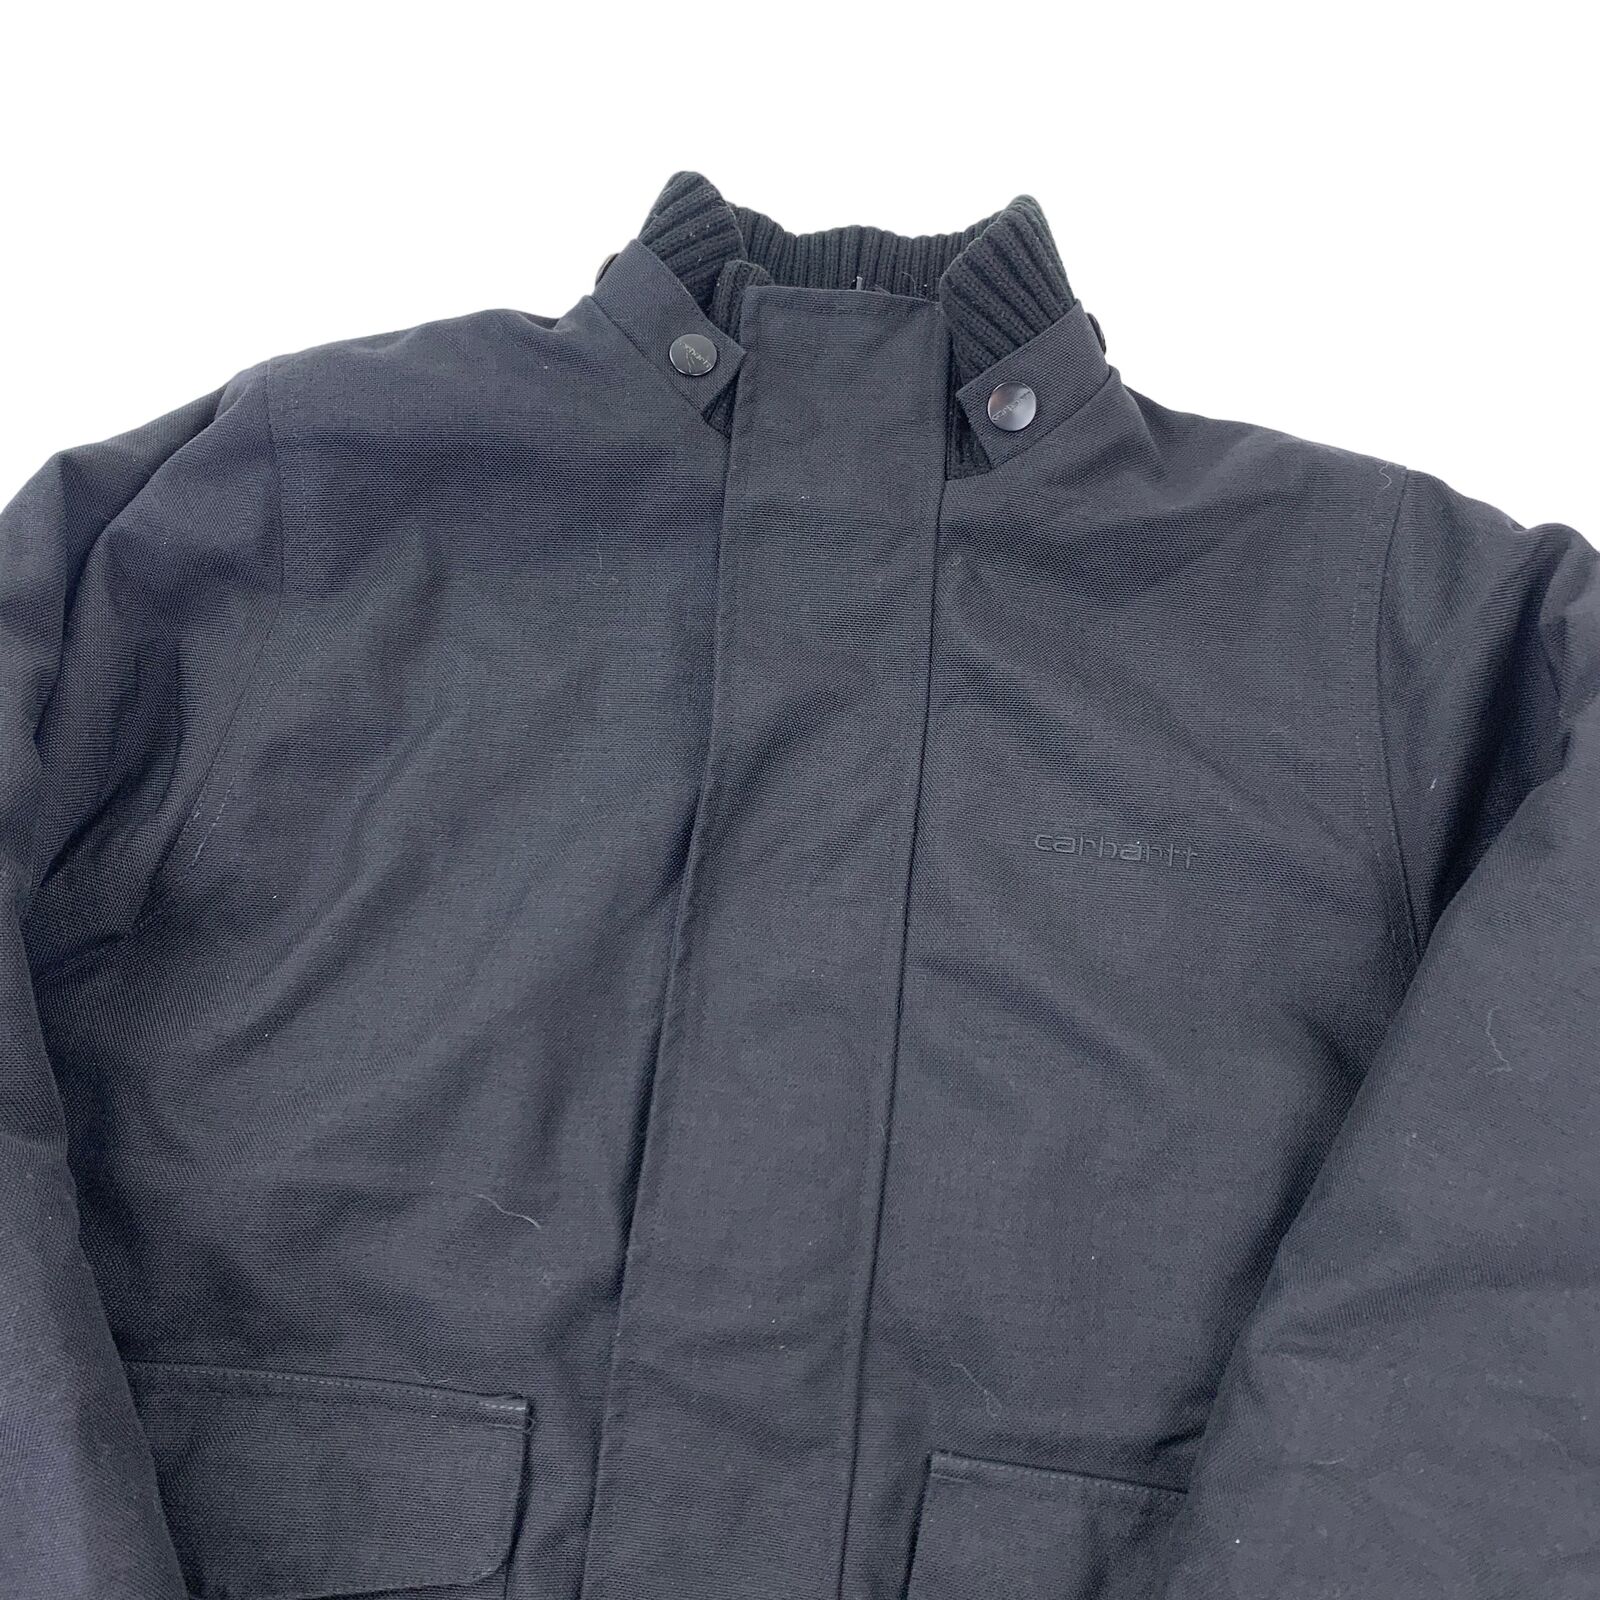 Carhartt Jacket (black) Workwear Bomber - M Jacket Übergangsjacke Windbreaker